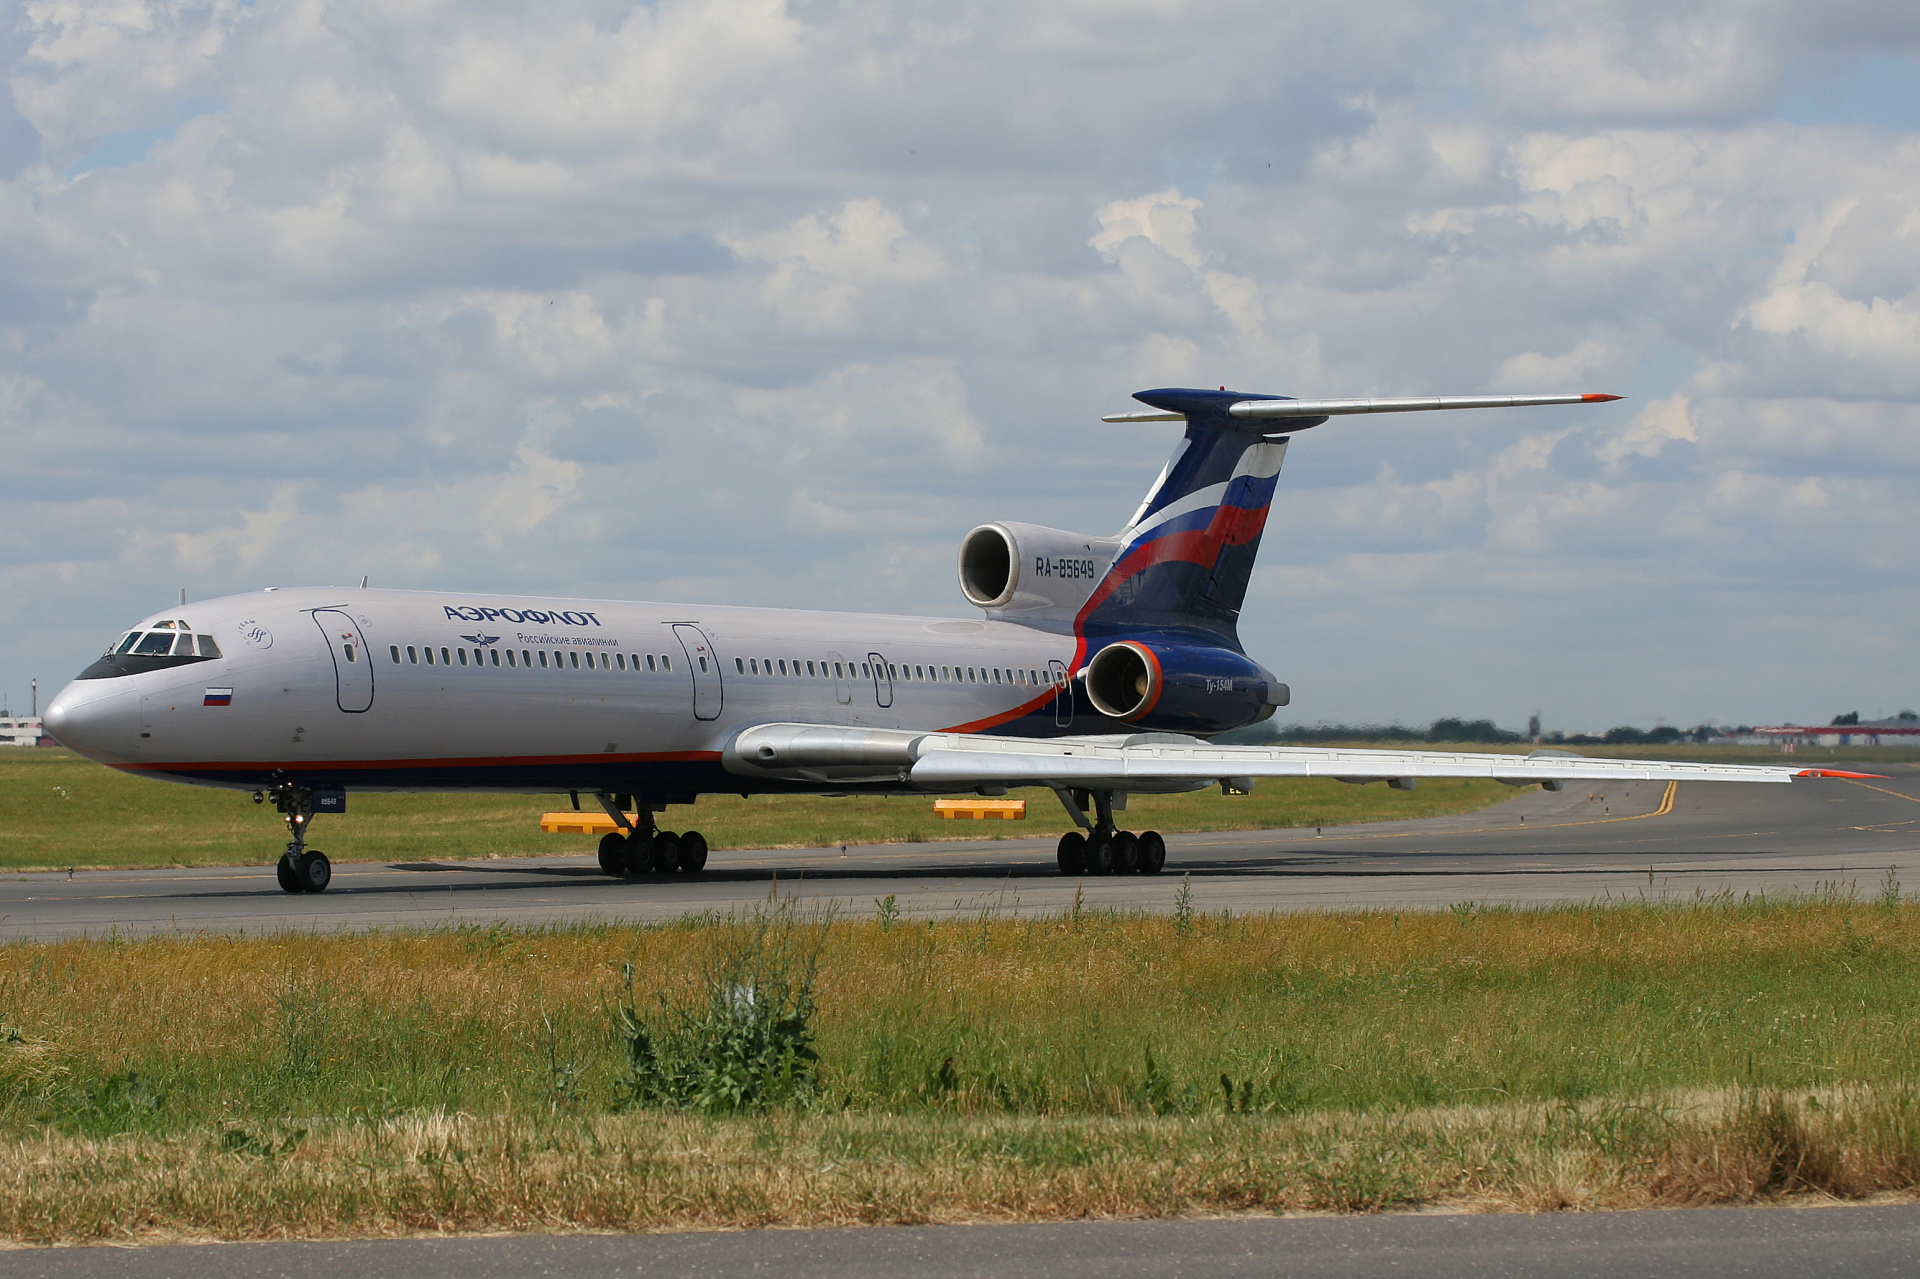 RA-85649 (Aircraft » EPWA Spotting » Tupolev Tu-154M » Aeroflot Russian Airlines)